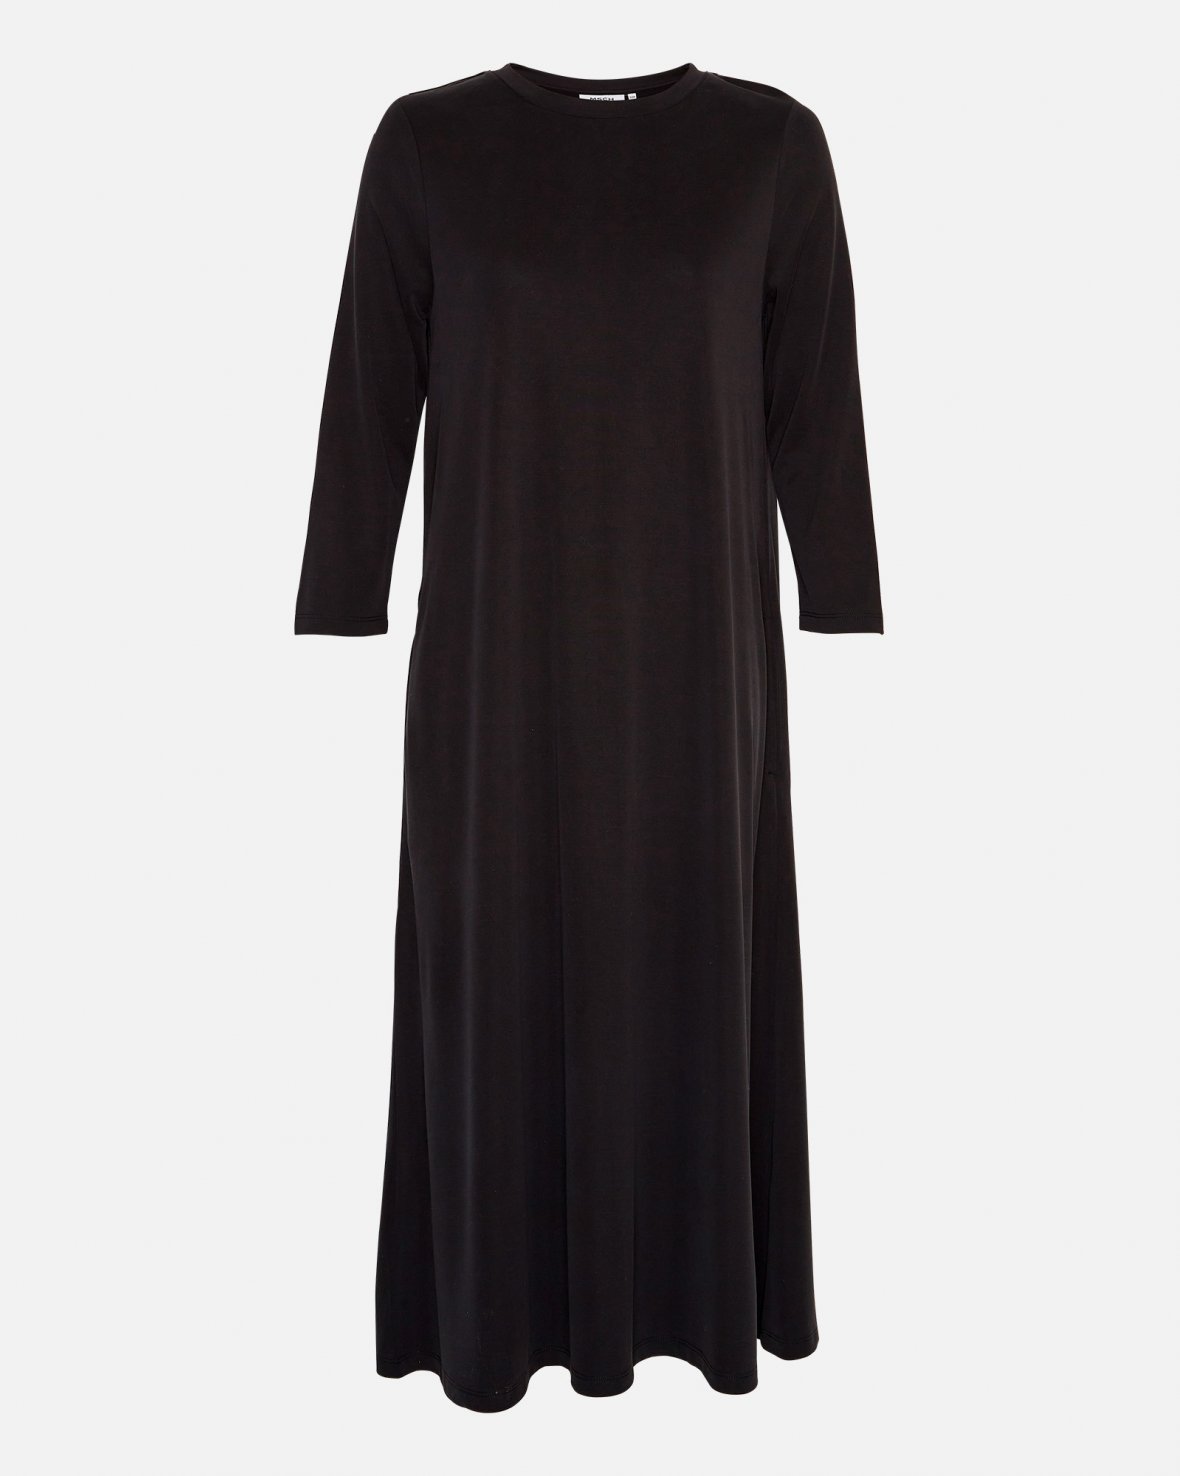 MSCH Copenhagen - MSCHBirdia Lynette 3/4 Dress - BLACK